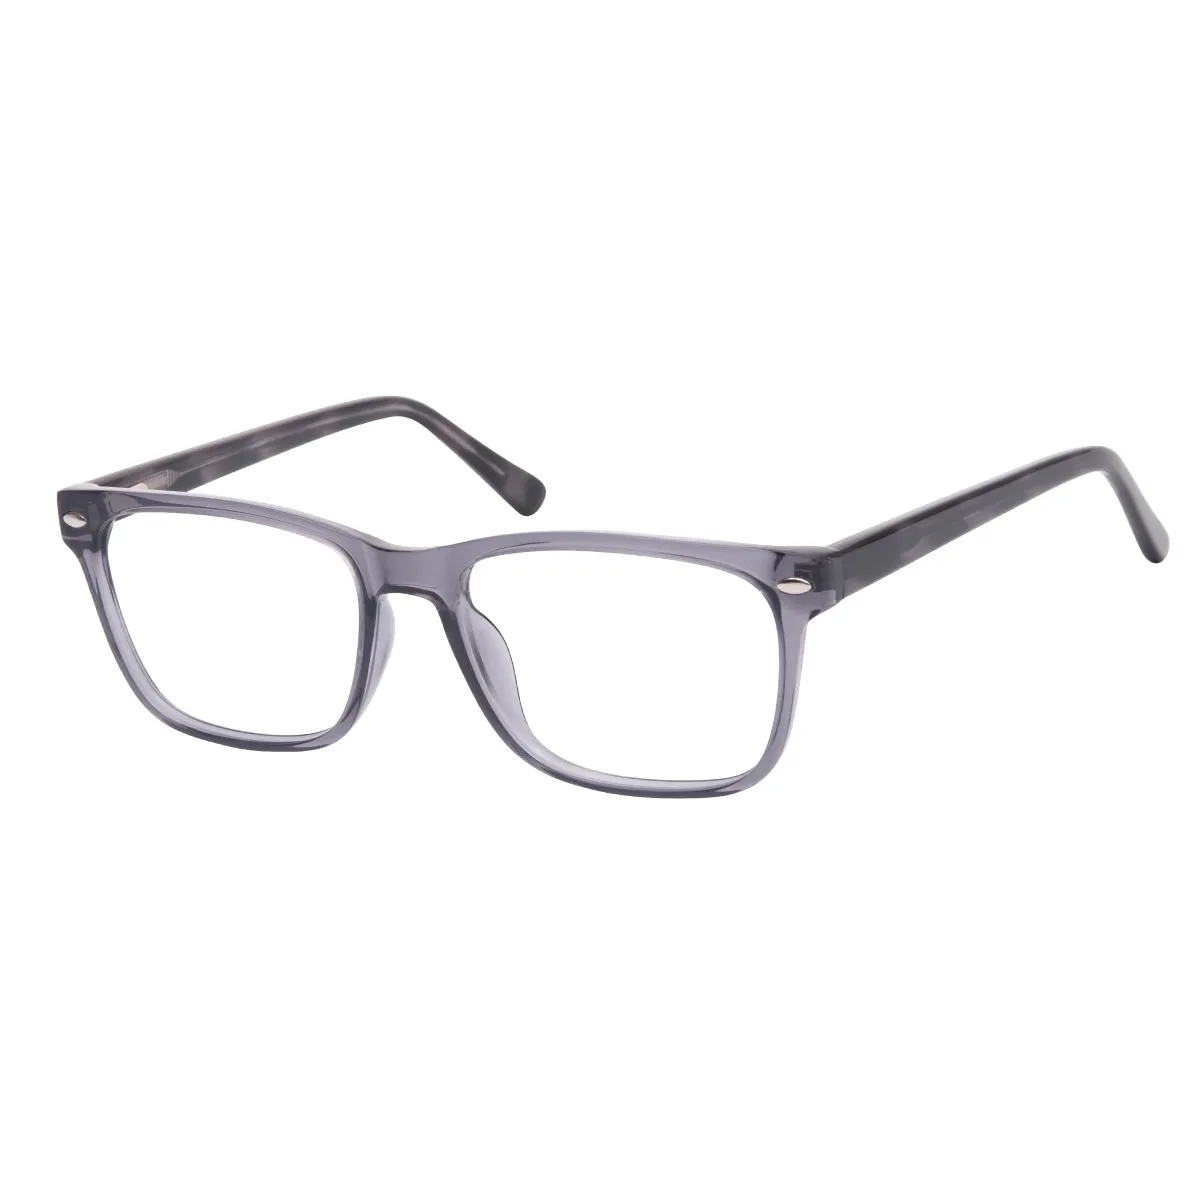 Roque - Rectangle Gray Glasses for Men & Women